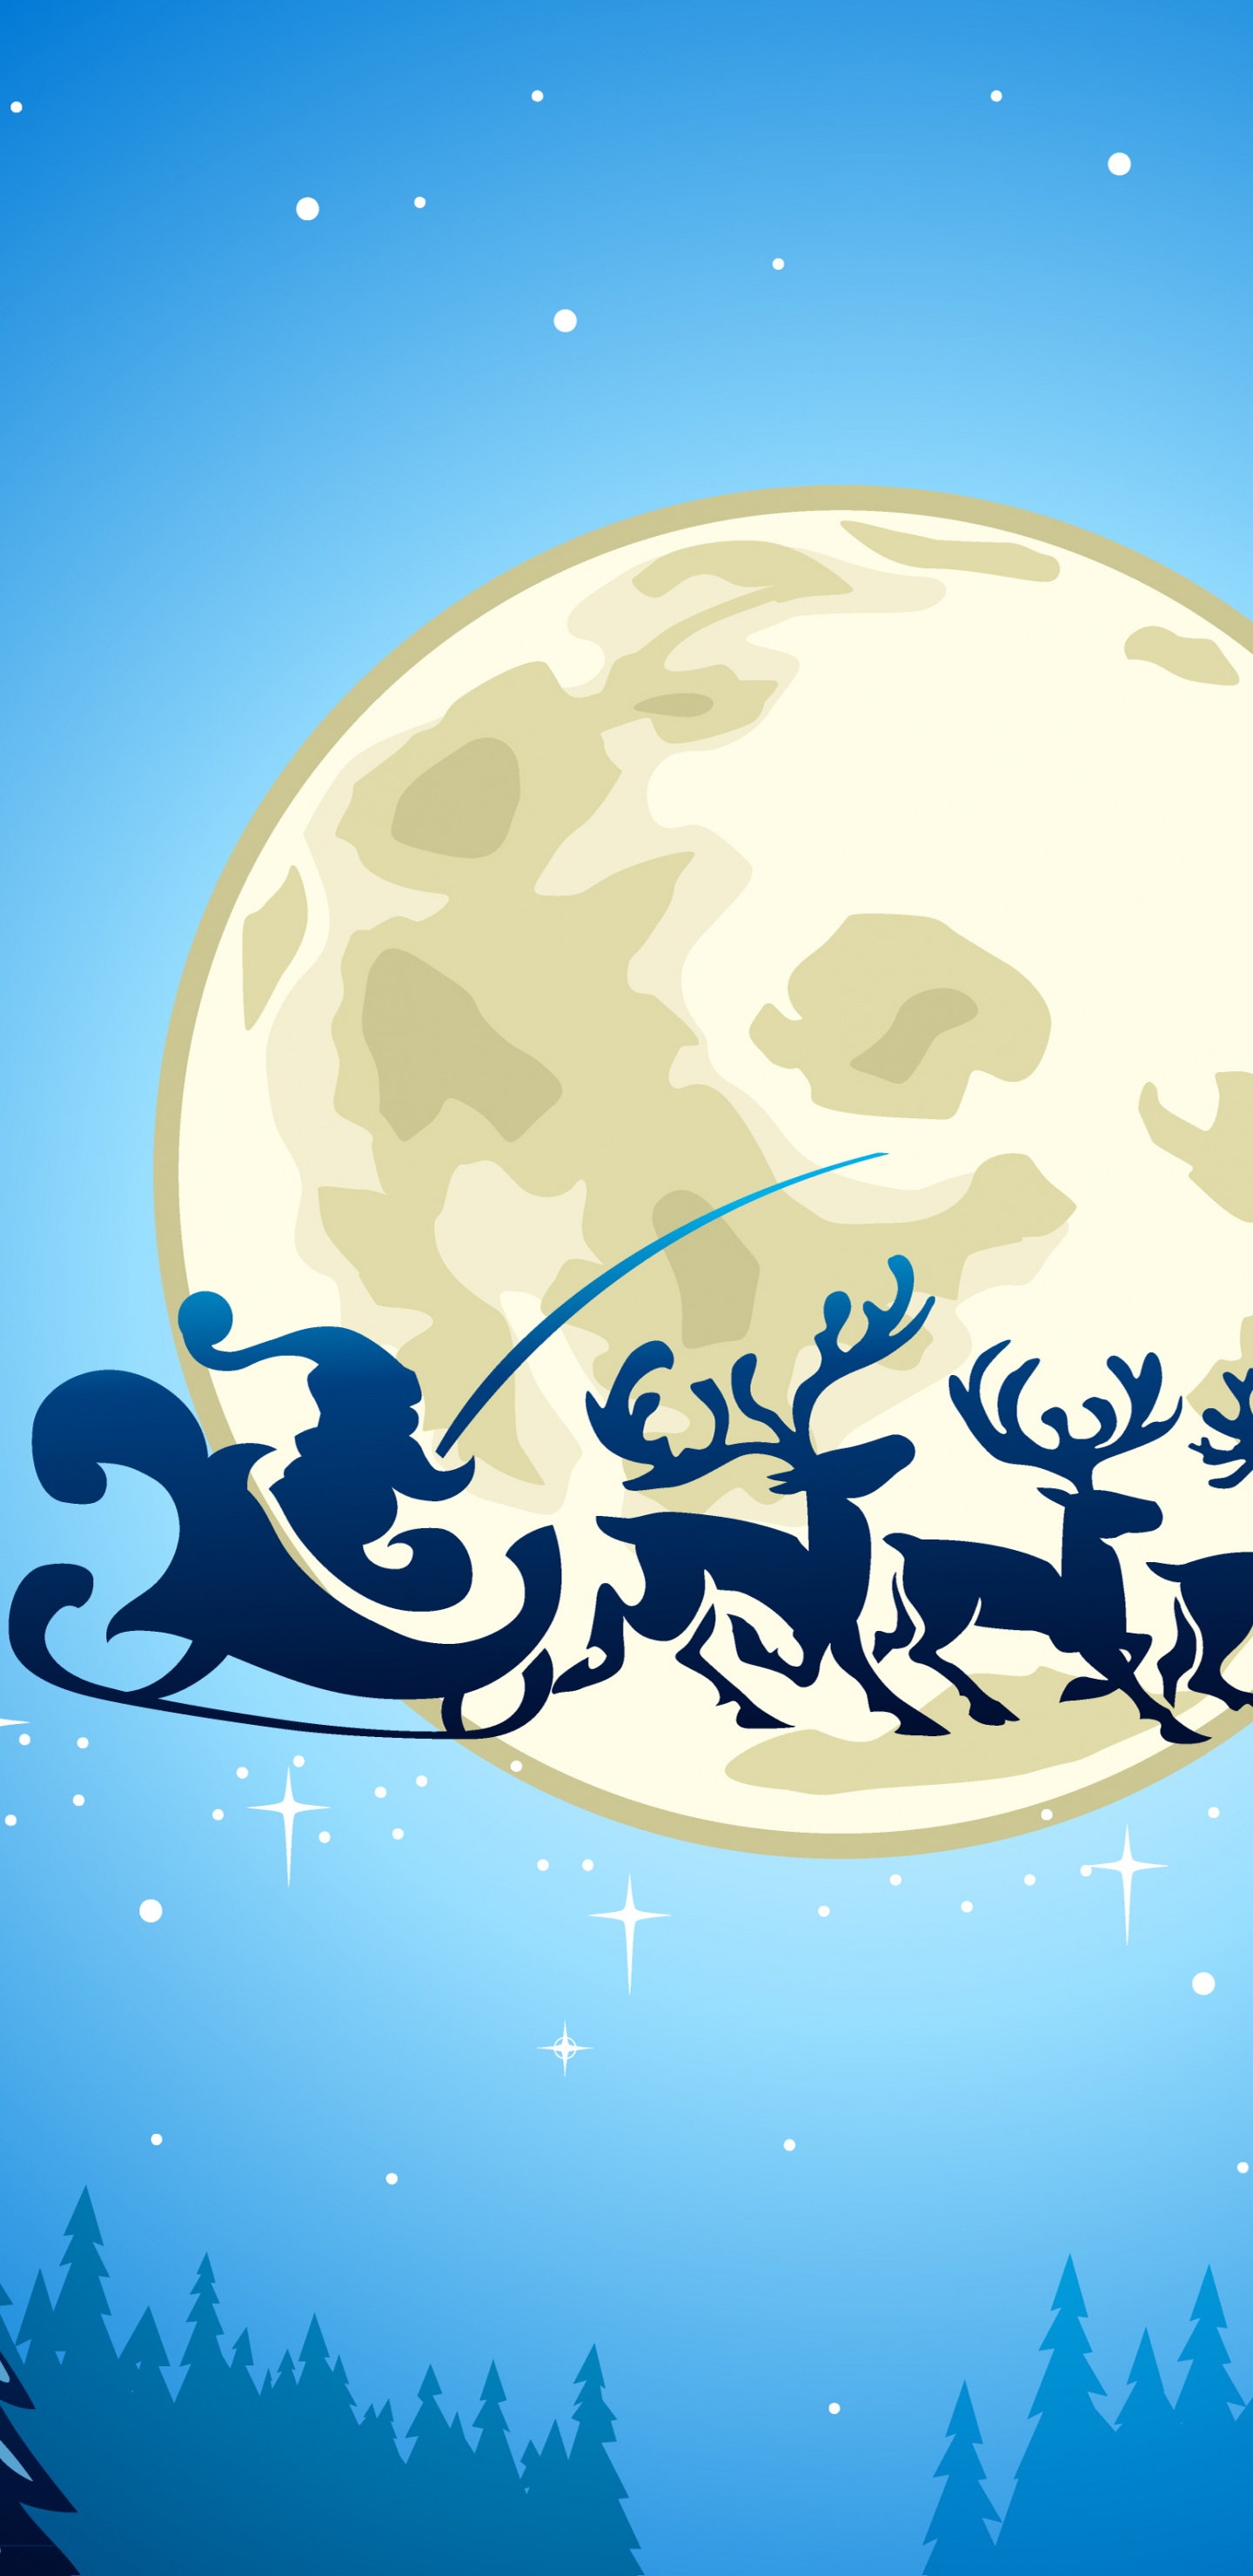 Le Jour De Noël, Santa Claus, Illustration, Ded Moroz, Blue. Wallpaper in 1440x2960 Resolution